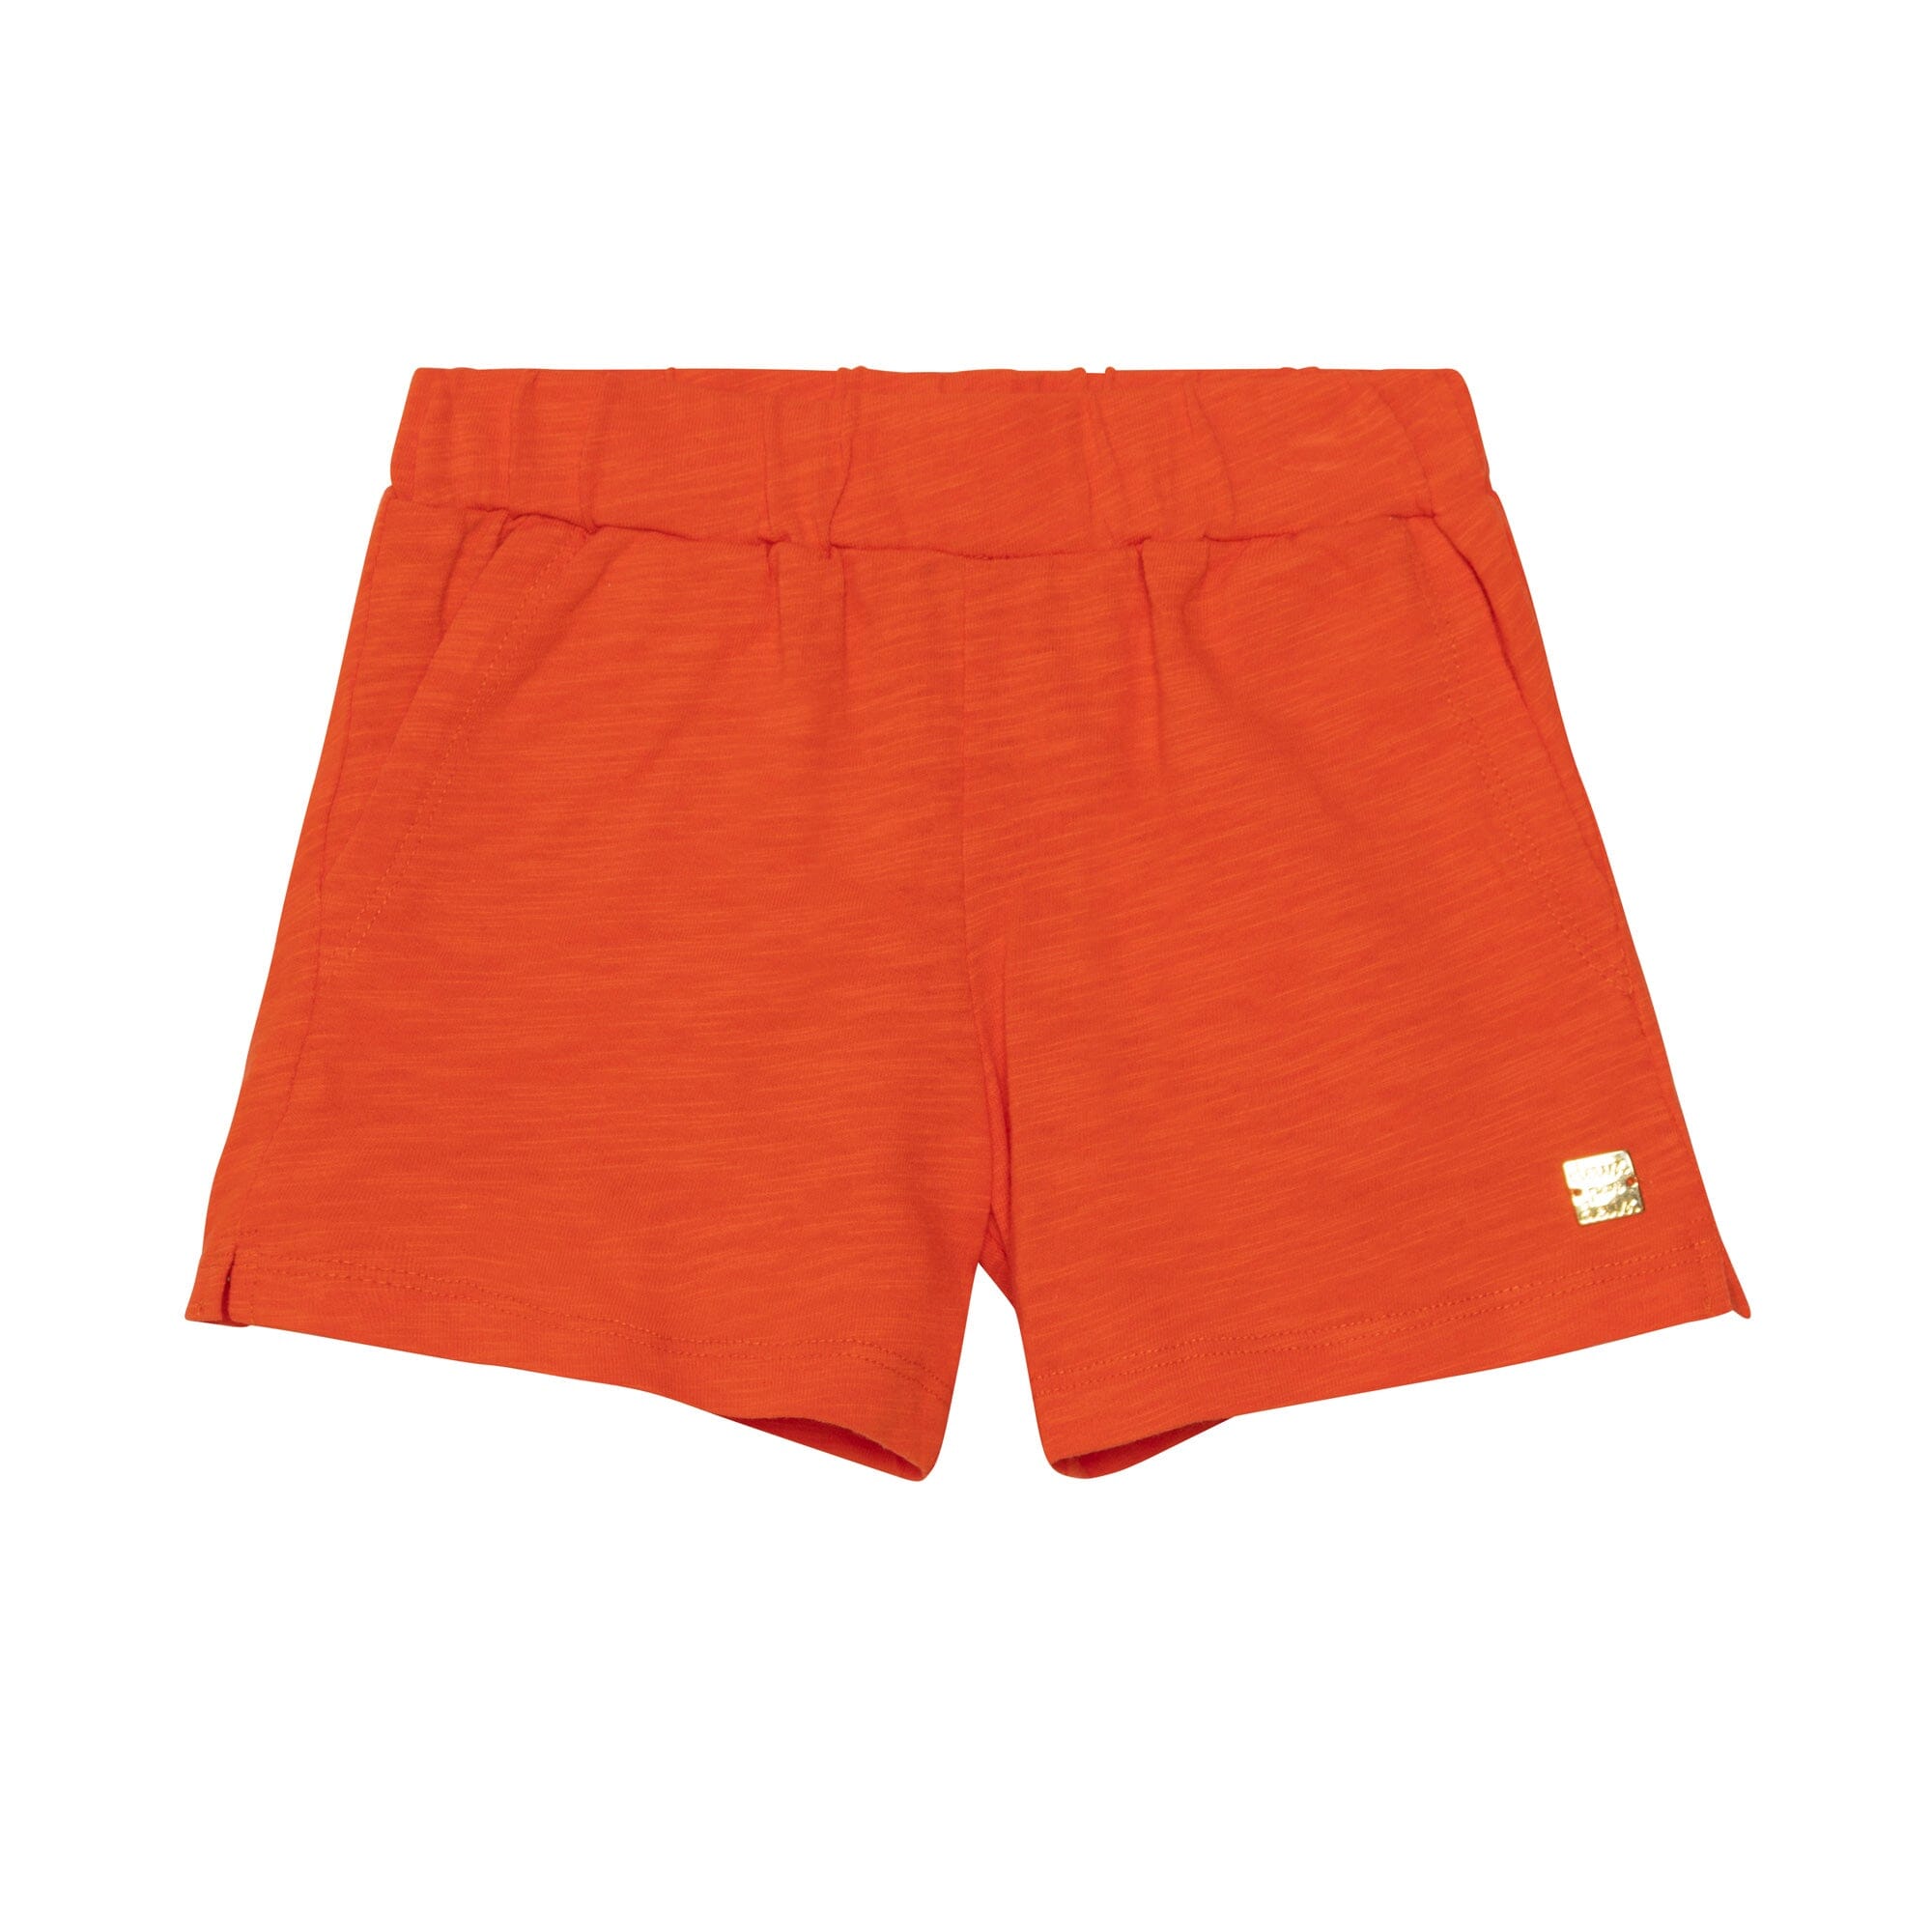 Short With Pocket Orange - E30L27_818